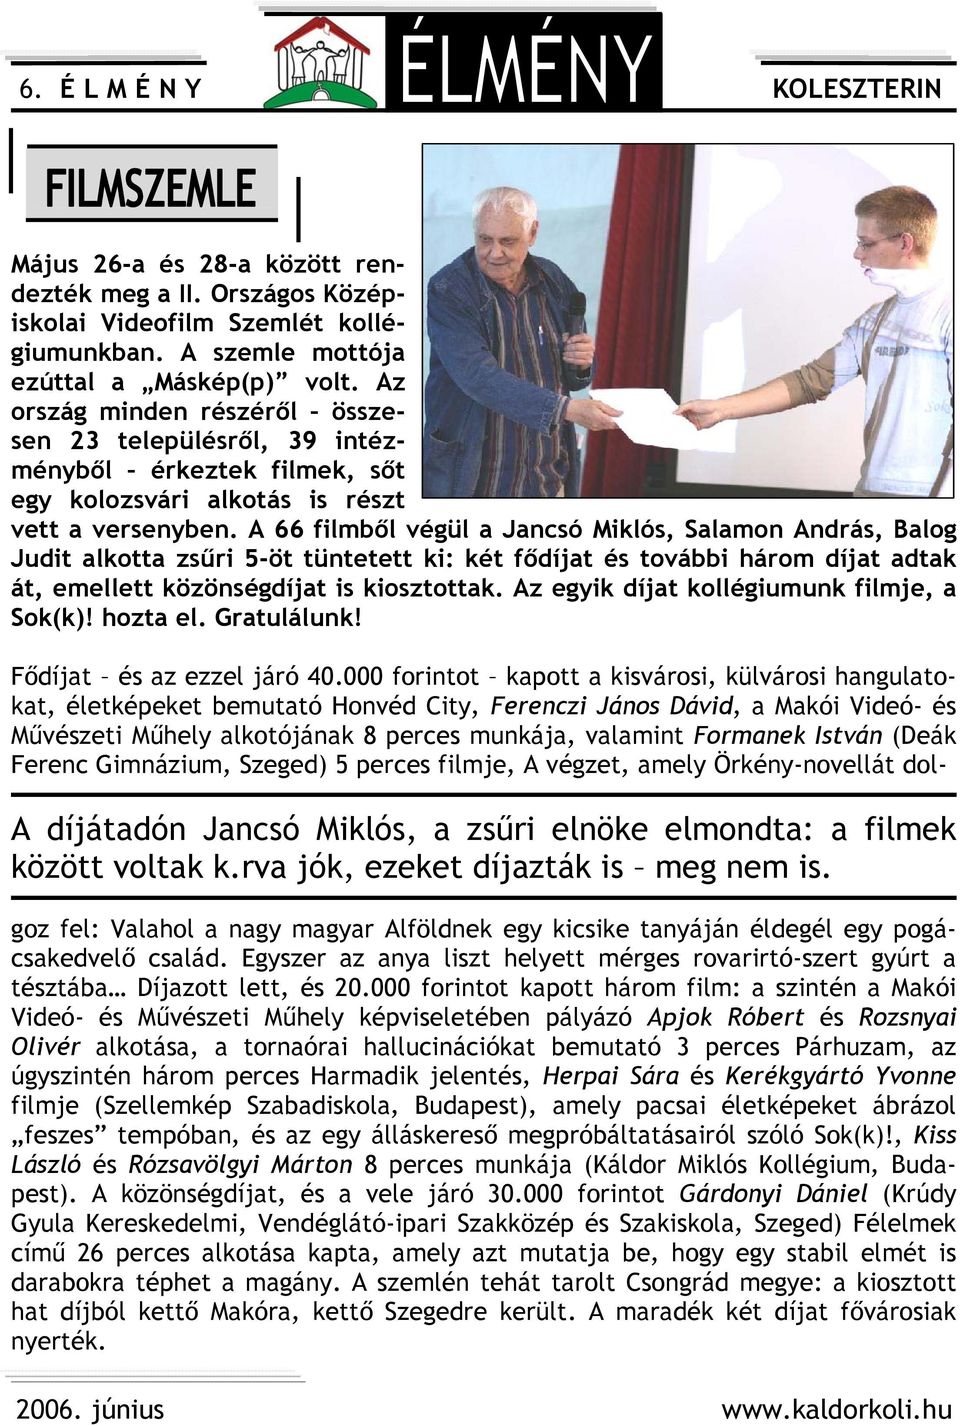 A 66 filmből végül a Jancsó Miklós, Salamon András, Balog Judit alkotta zsűri 5-öt tüntetett ki: két fődíjat és további három díjat adtak át, emellett közönségdíjat is kiosztottak.